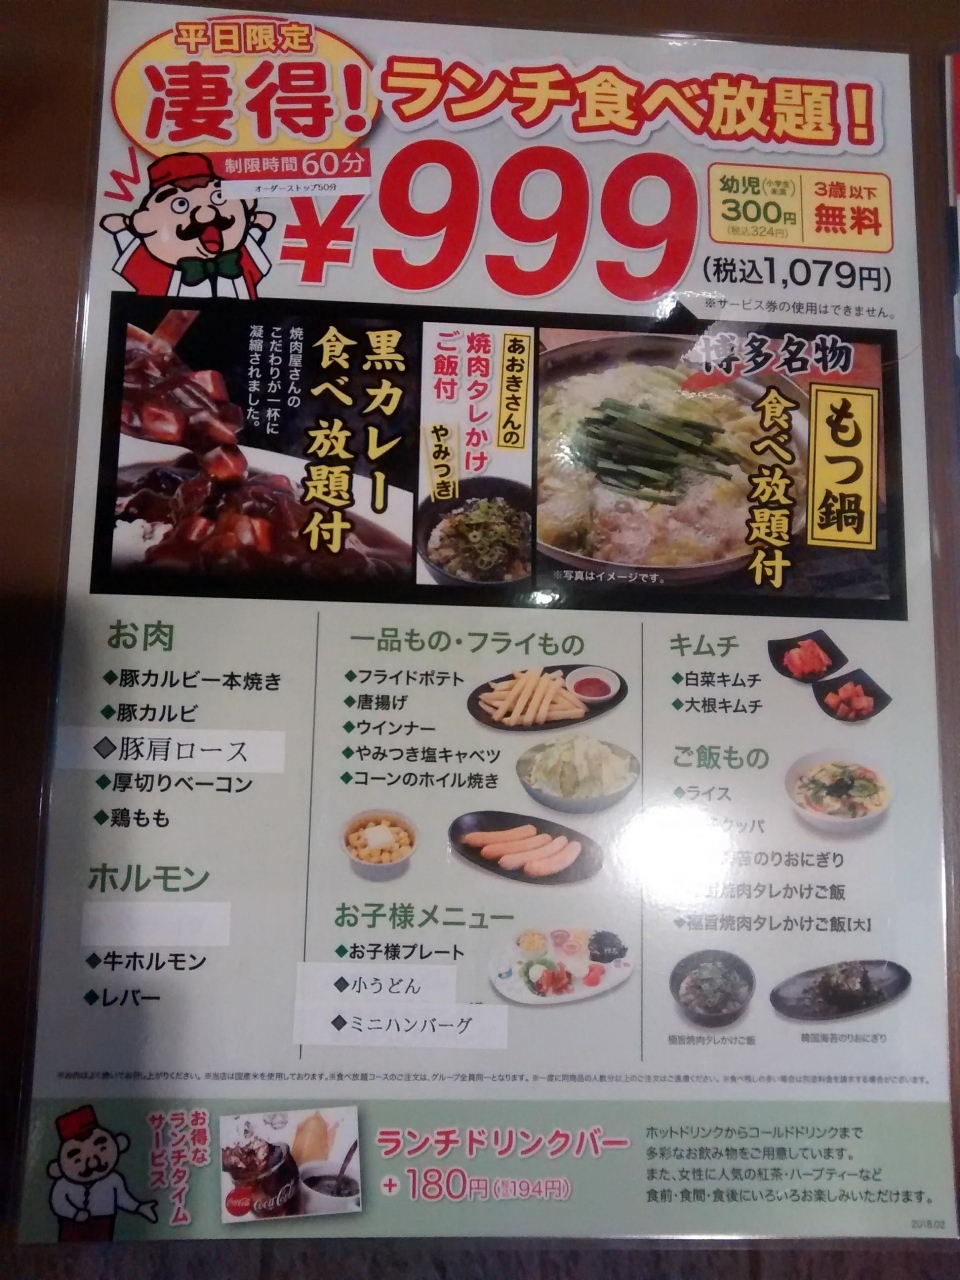 平日限定ですが税抜999円の食べ放題コース